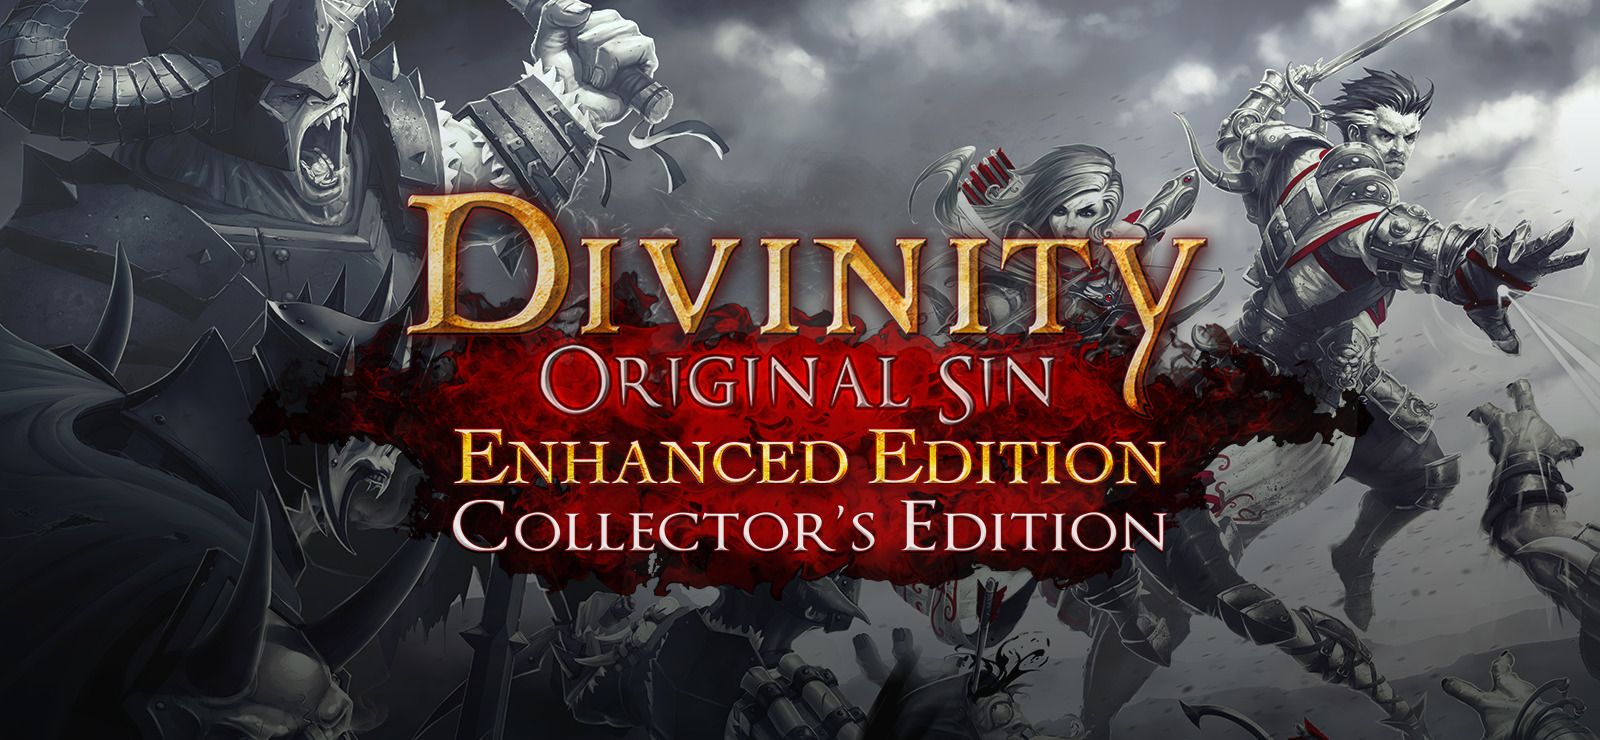 Divinity: Original Sin Enhanced Edition Collector's Edition